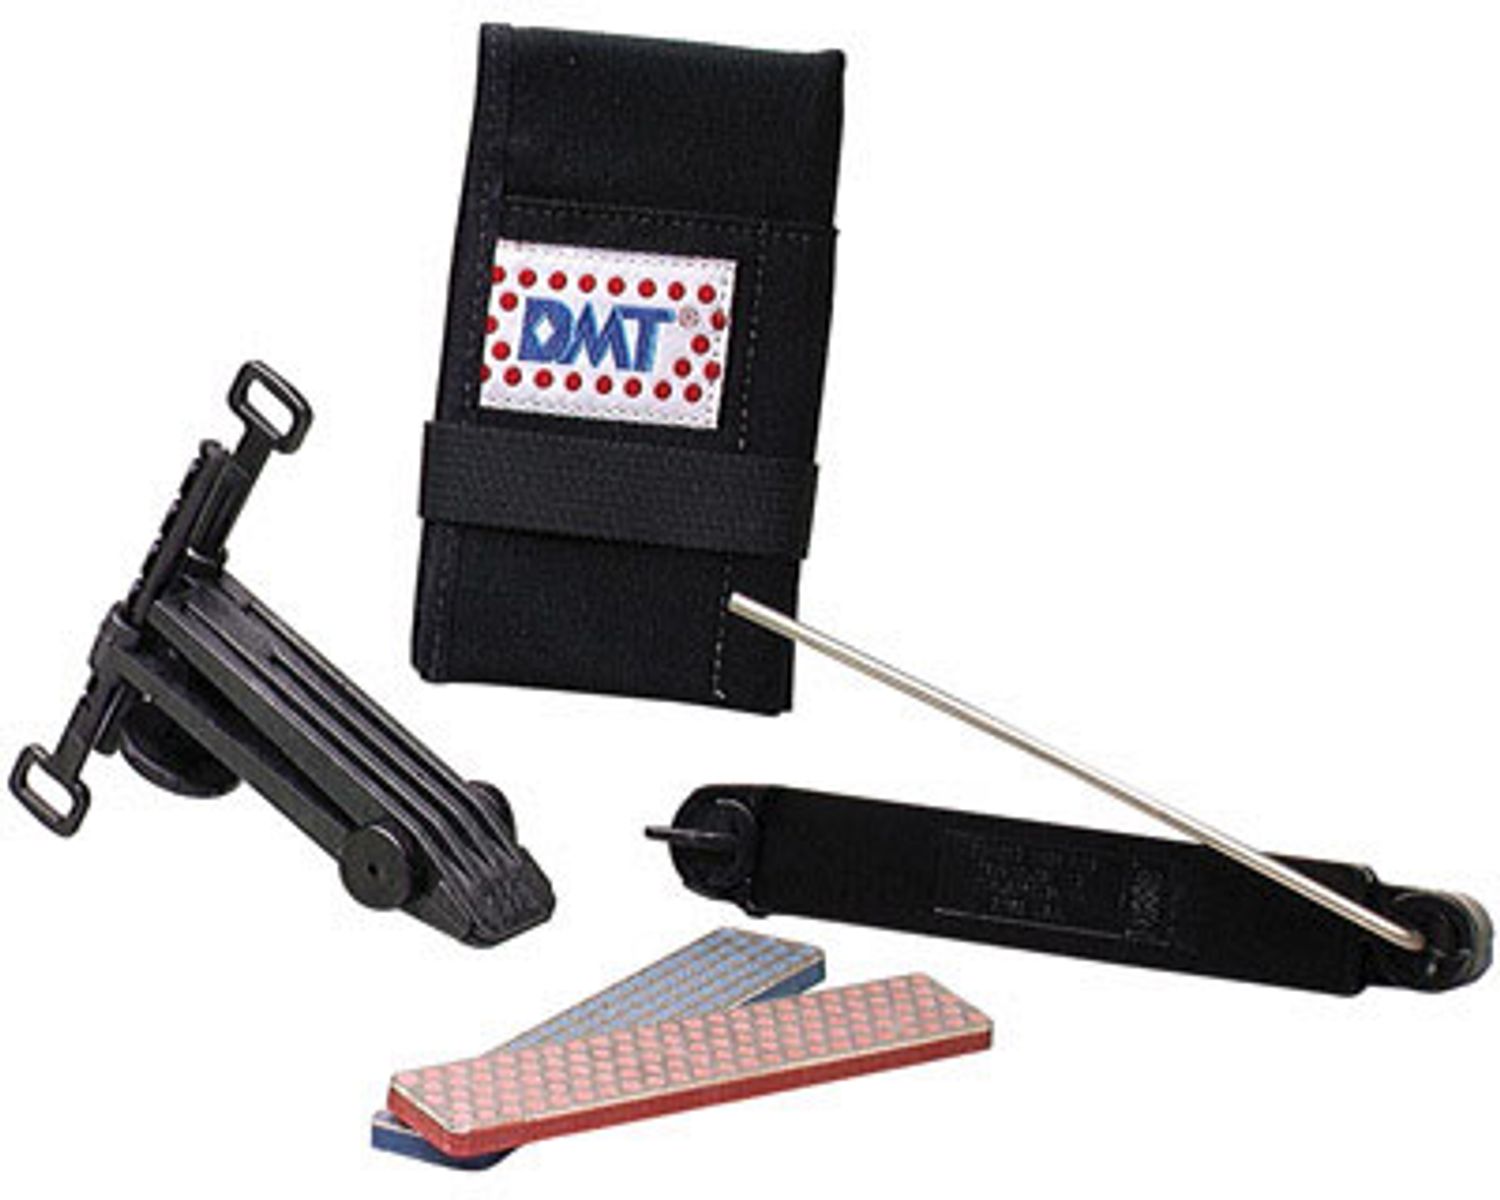 DMT Aligner ProKit Knife Sharpening Kit with Carrying Case 